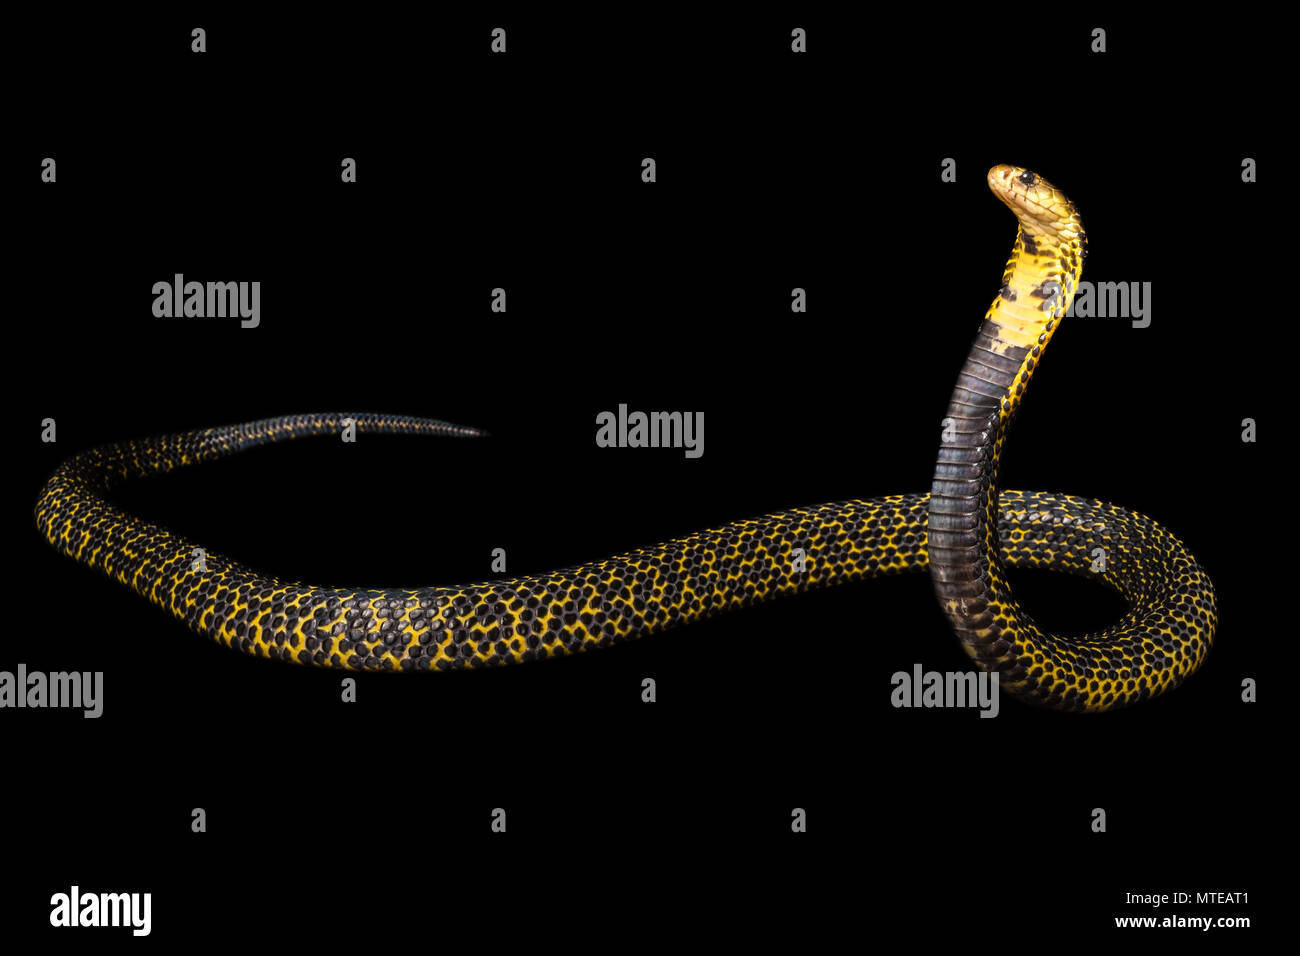 Naja saramensis / Samar cobra Stock Photo